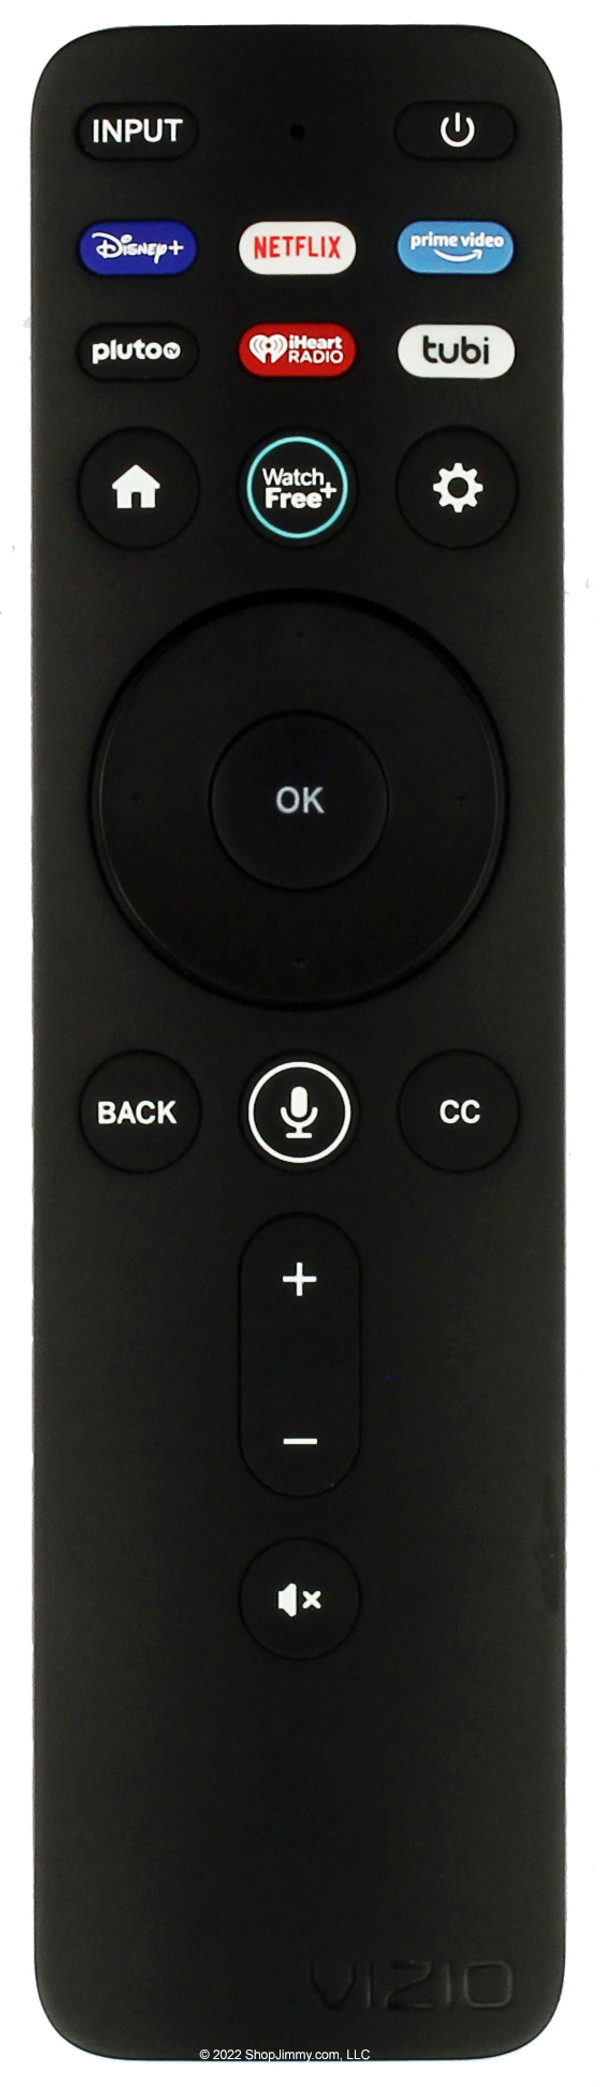 Vizio 00111200152 (XRT260) Bluetooth Voice Remote Control -- NEW